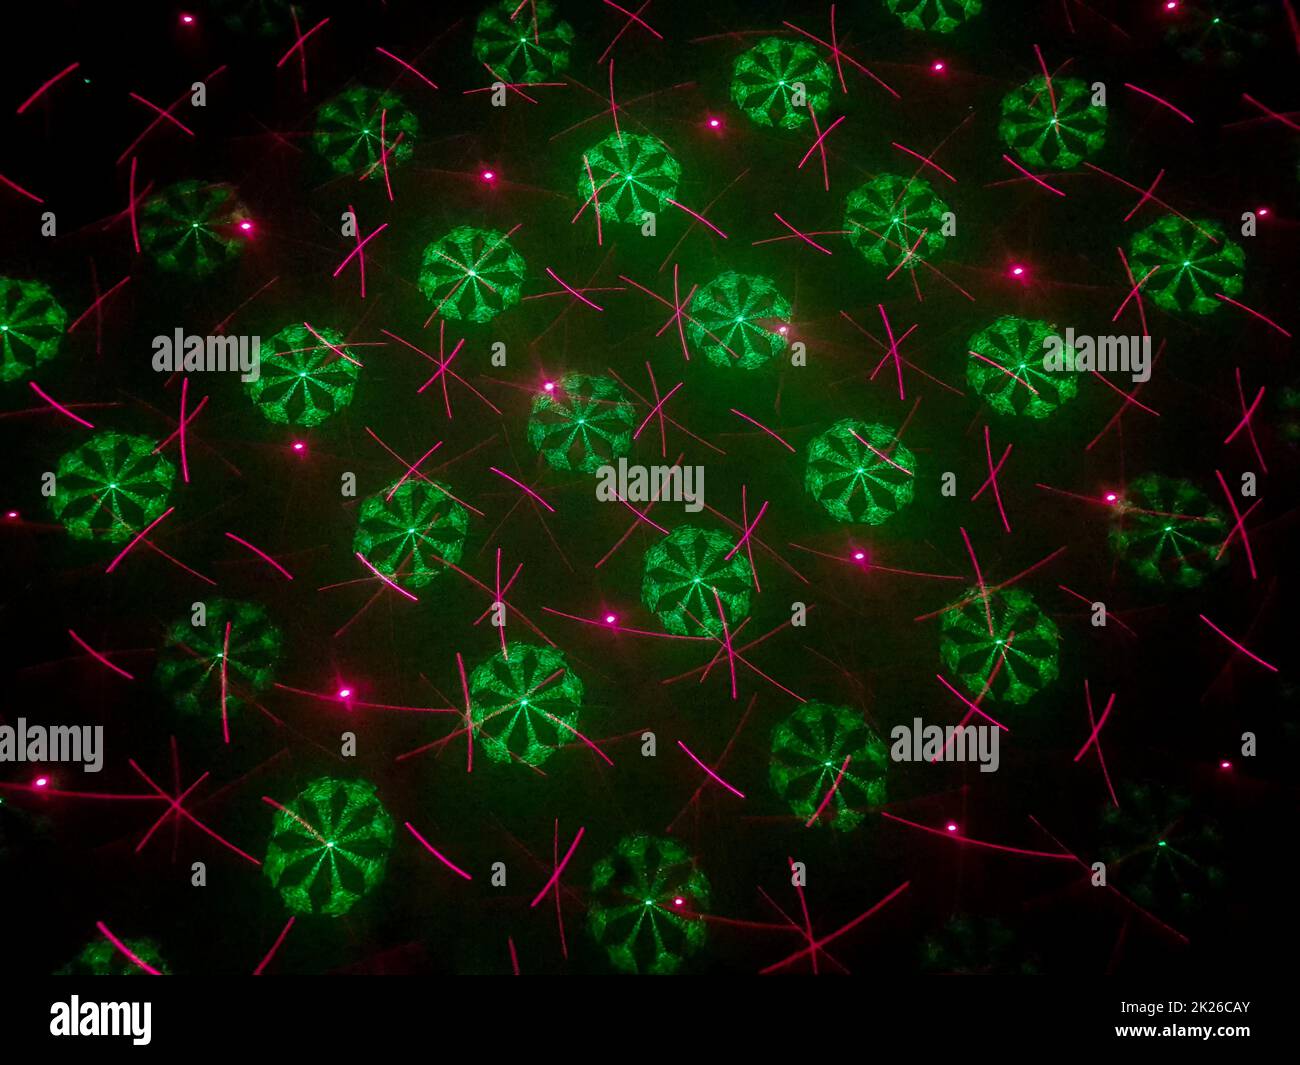 Wunderschöne Aufnahme von Laserlichtern mit Stern- und Feuerwerkskörpern an der Wand Stockfoto